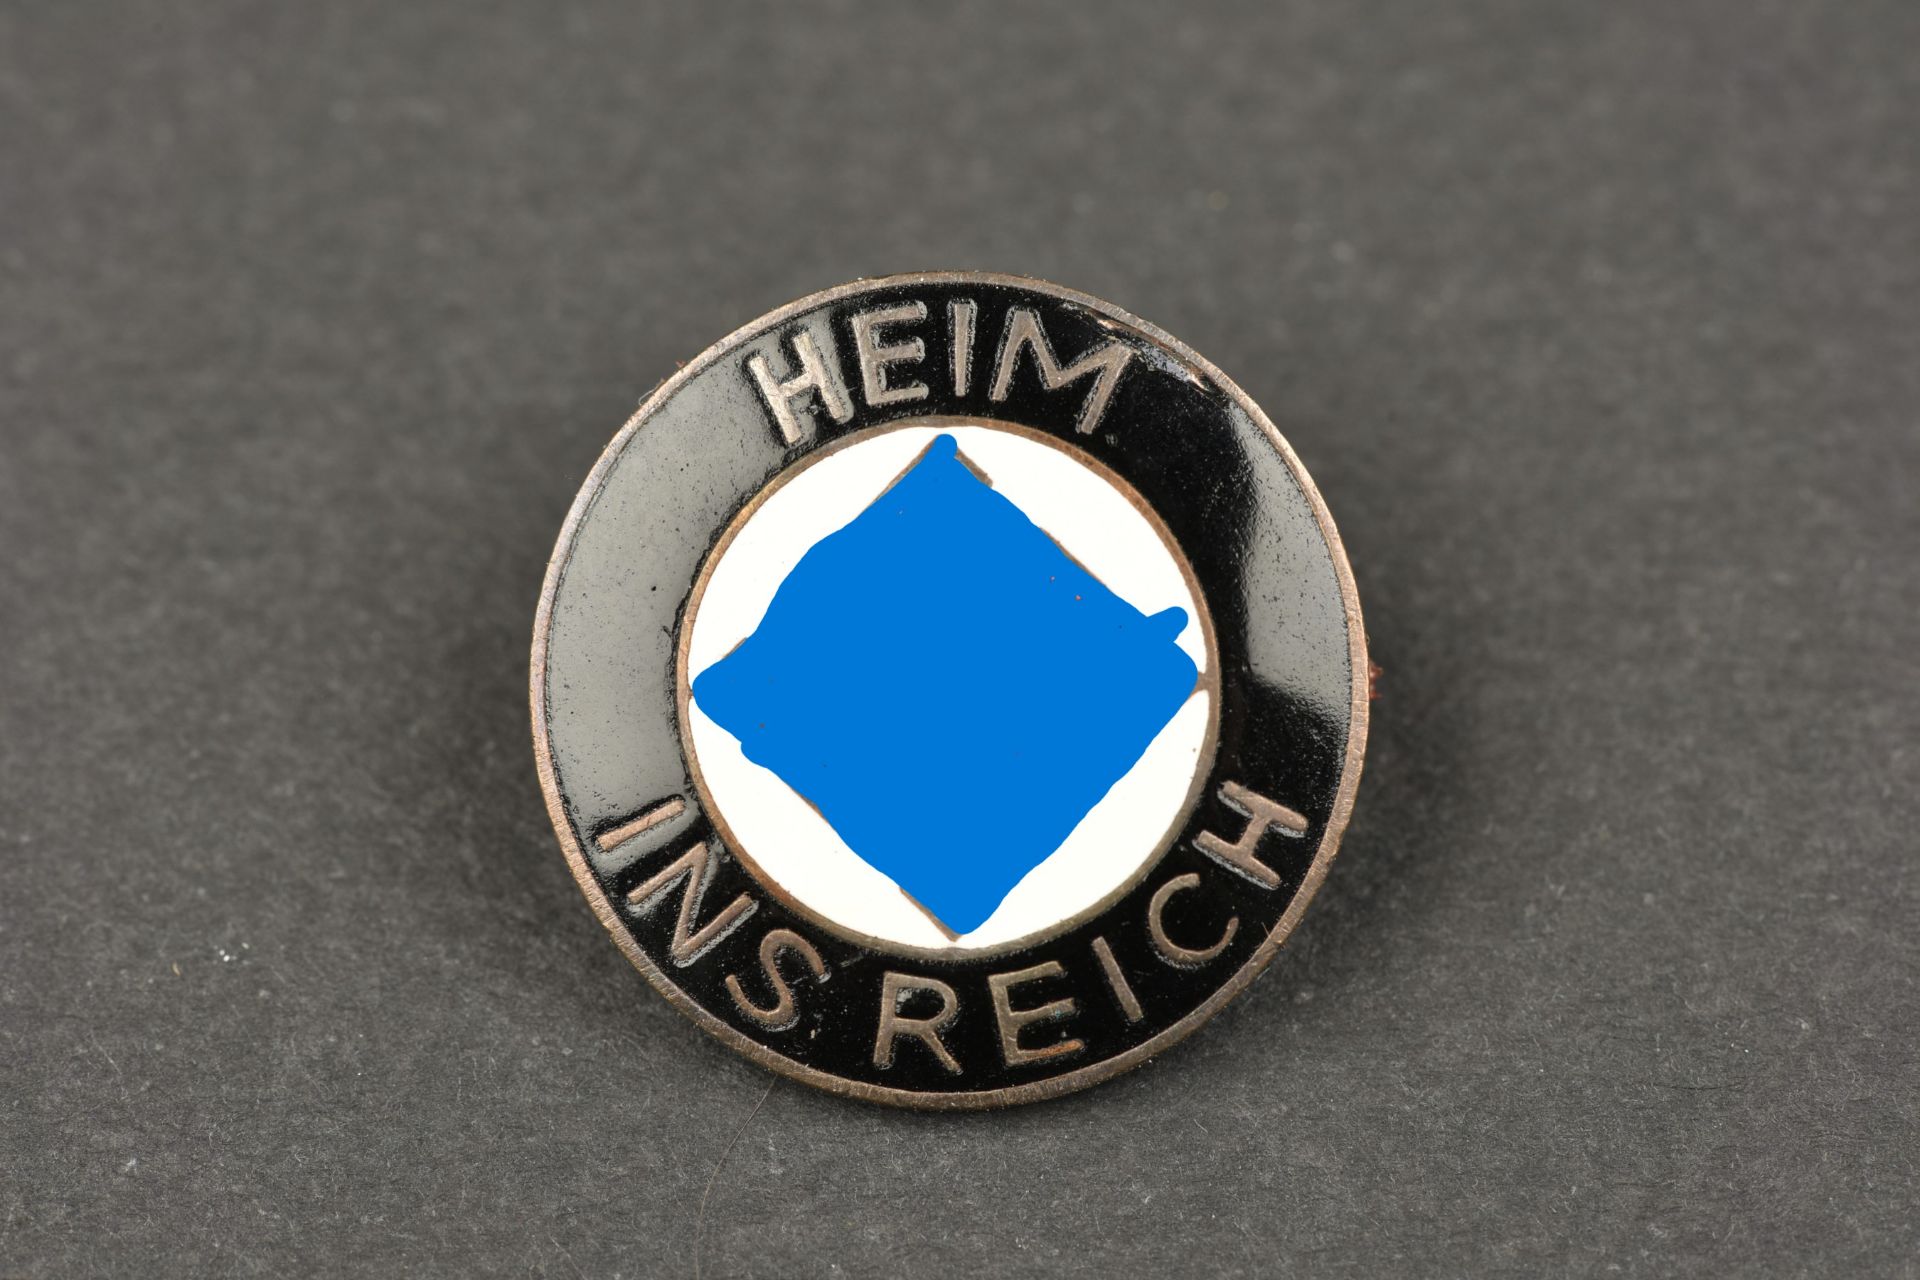 Insigne Heim Ins Reich. Heim ins Reich insignia.